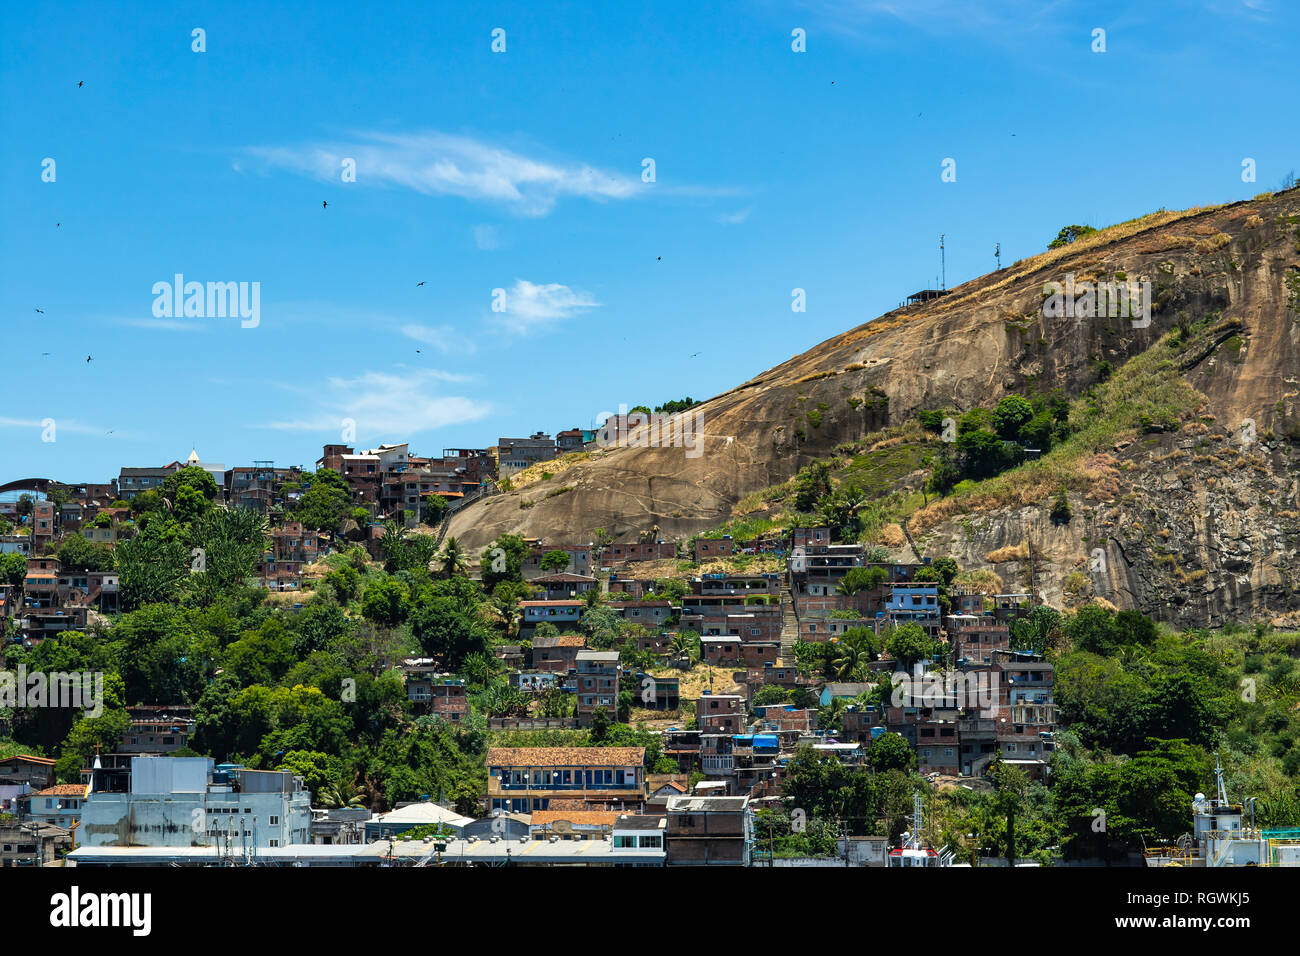 Los barrios marginales del mundo. Las favelas de Brasil. Tugurio en la ciudad de Niterói, Penha Hill de los barrios de tugurios. Foto de stock